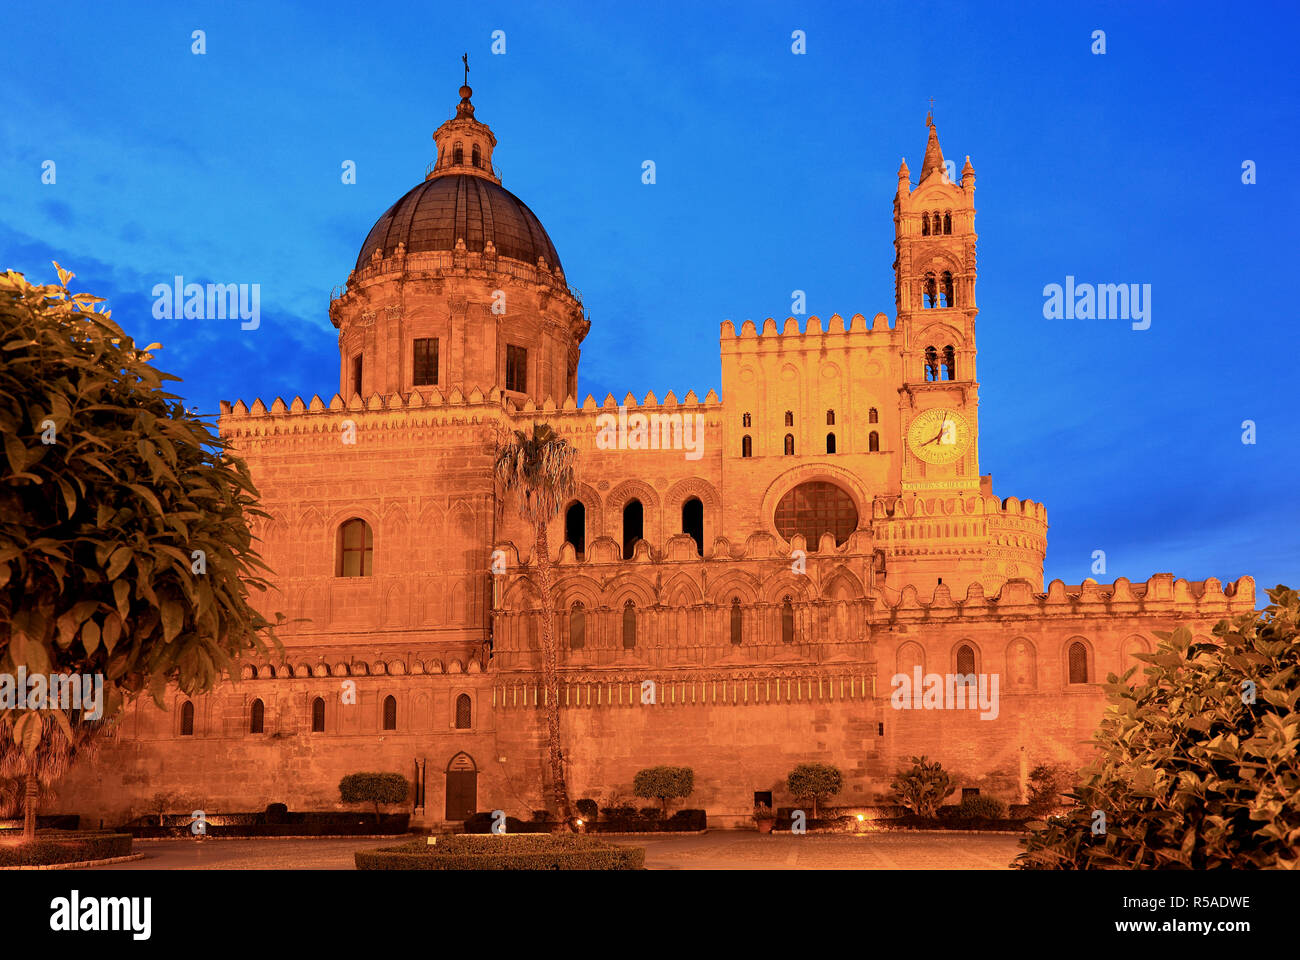 Cathedral Maria Santissima Assunta, Palermo, Sicily, Italy Stock Photo